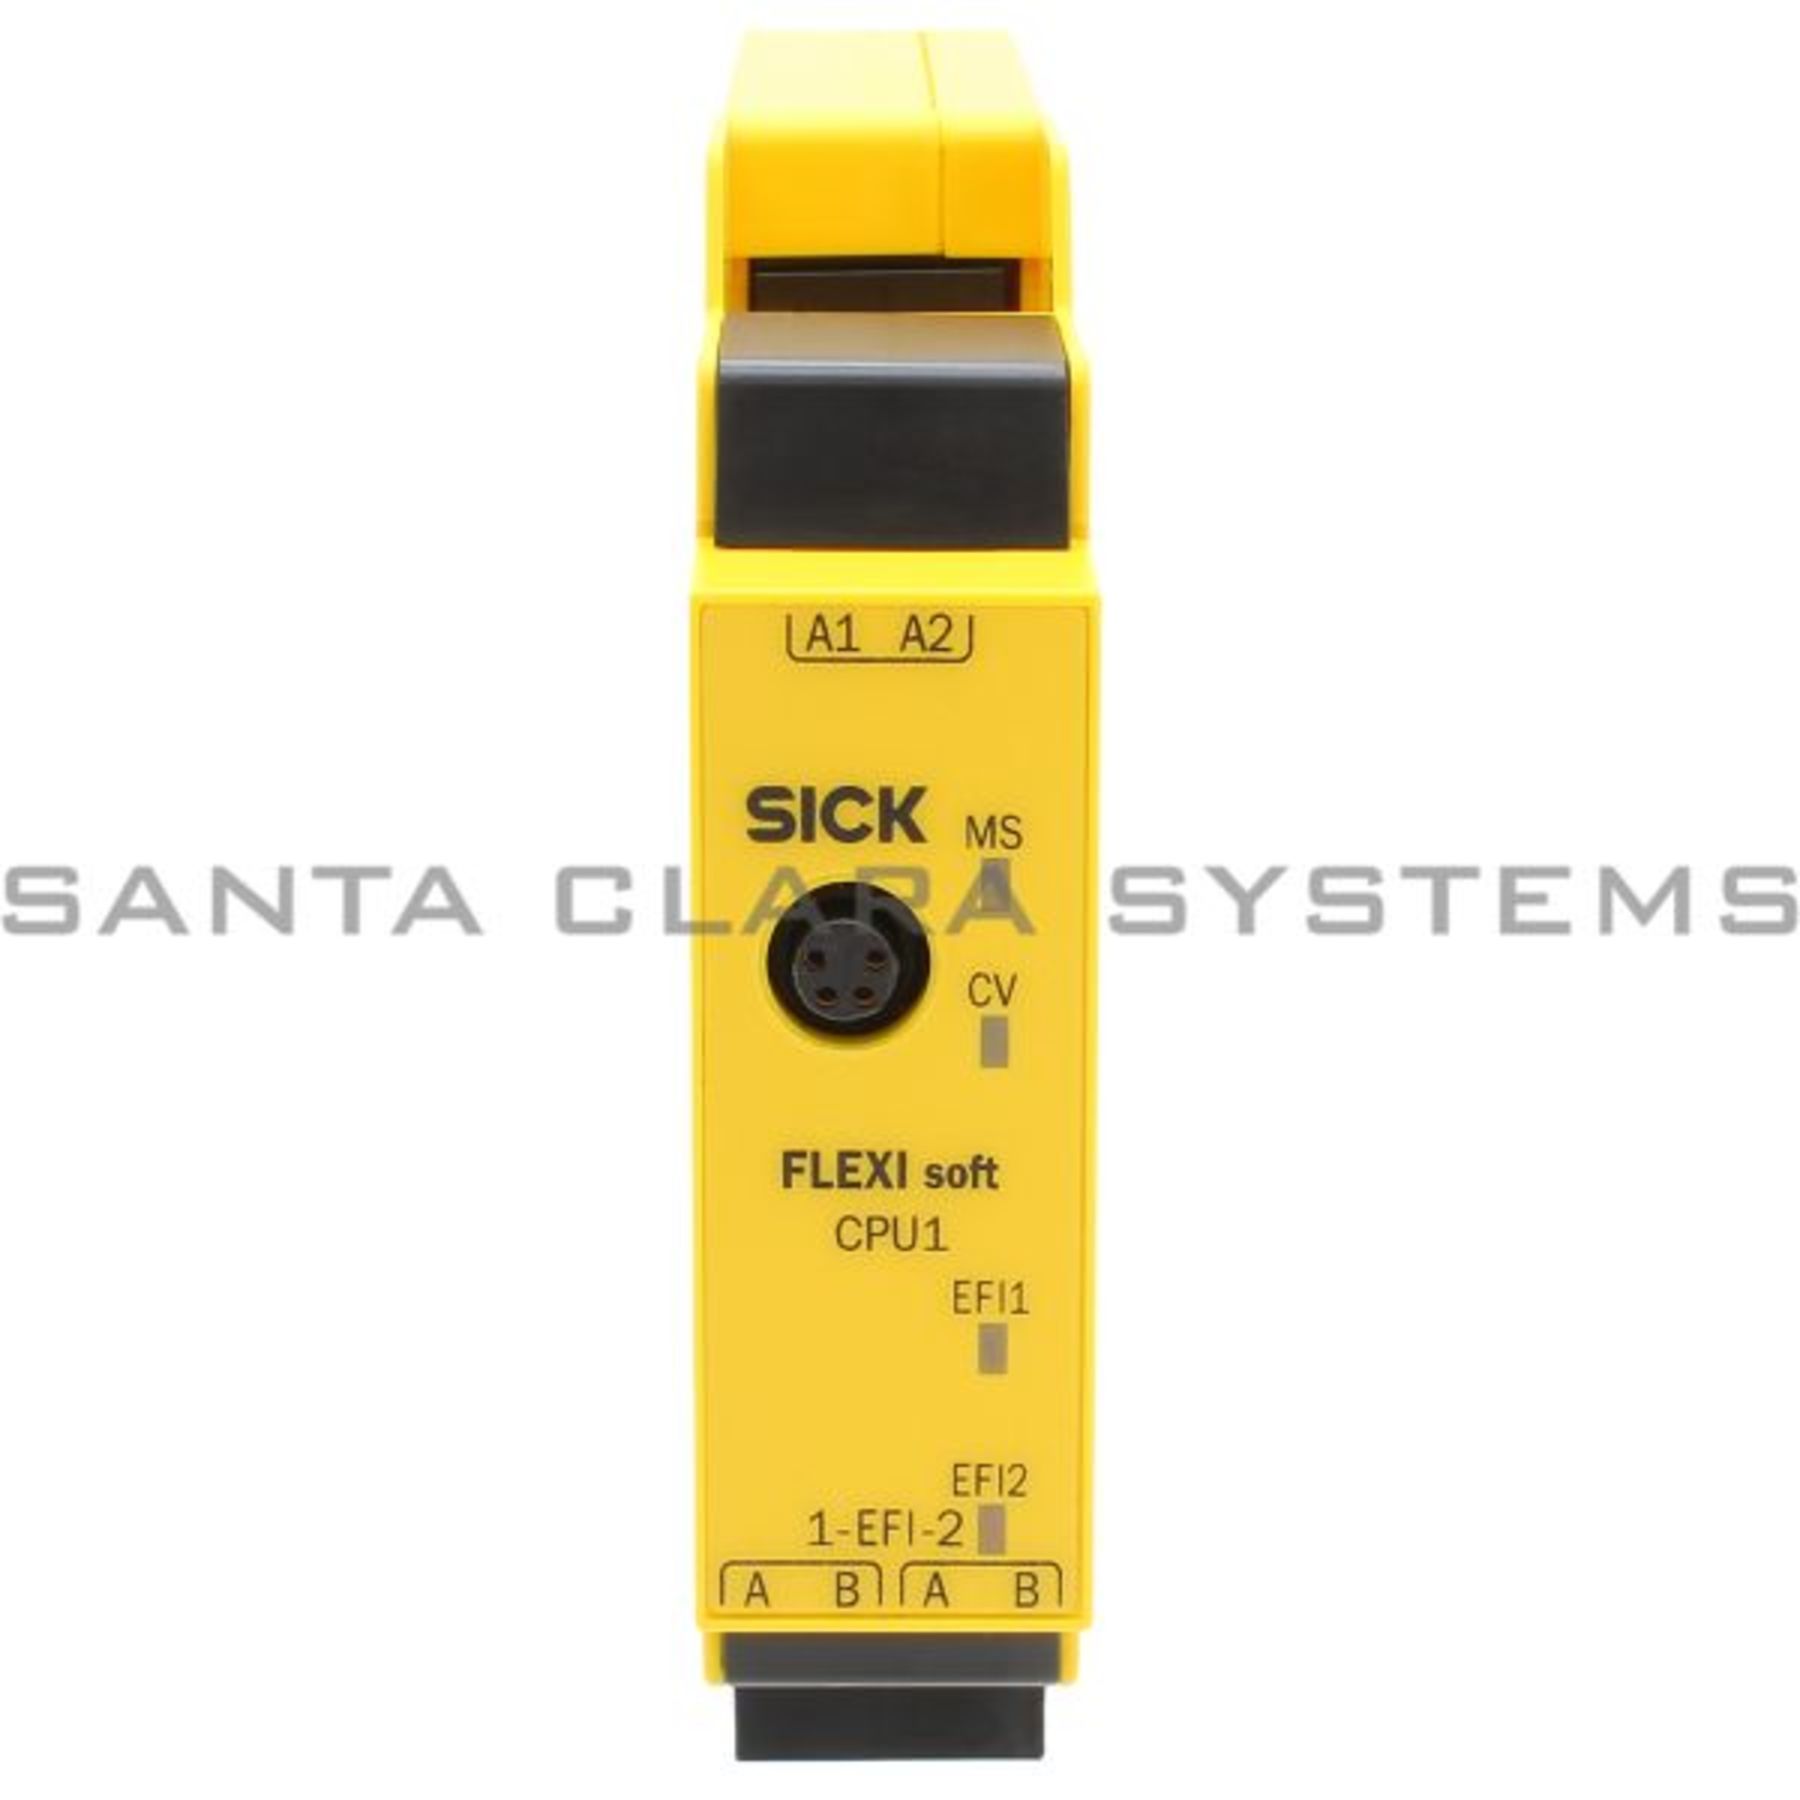 FX3-CPU130002 Sick Safety Controller - Santa Clara Systems